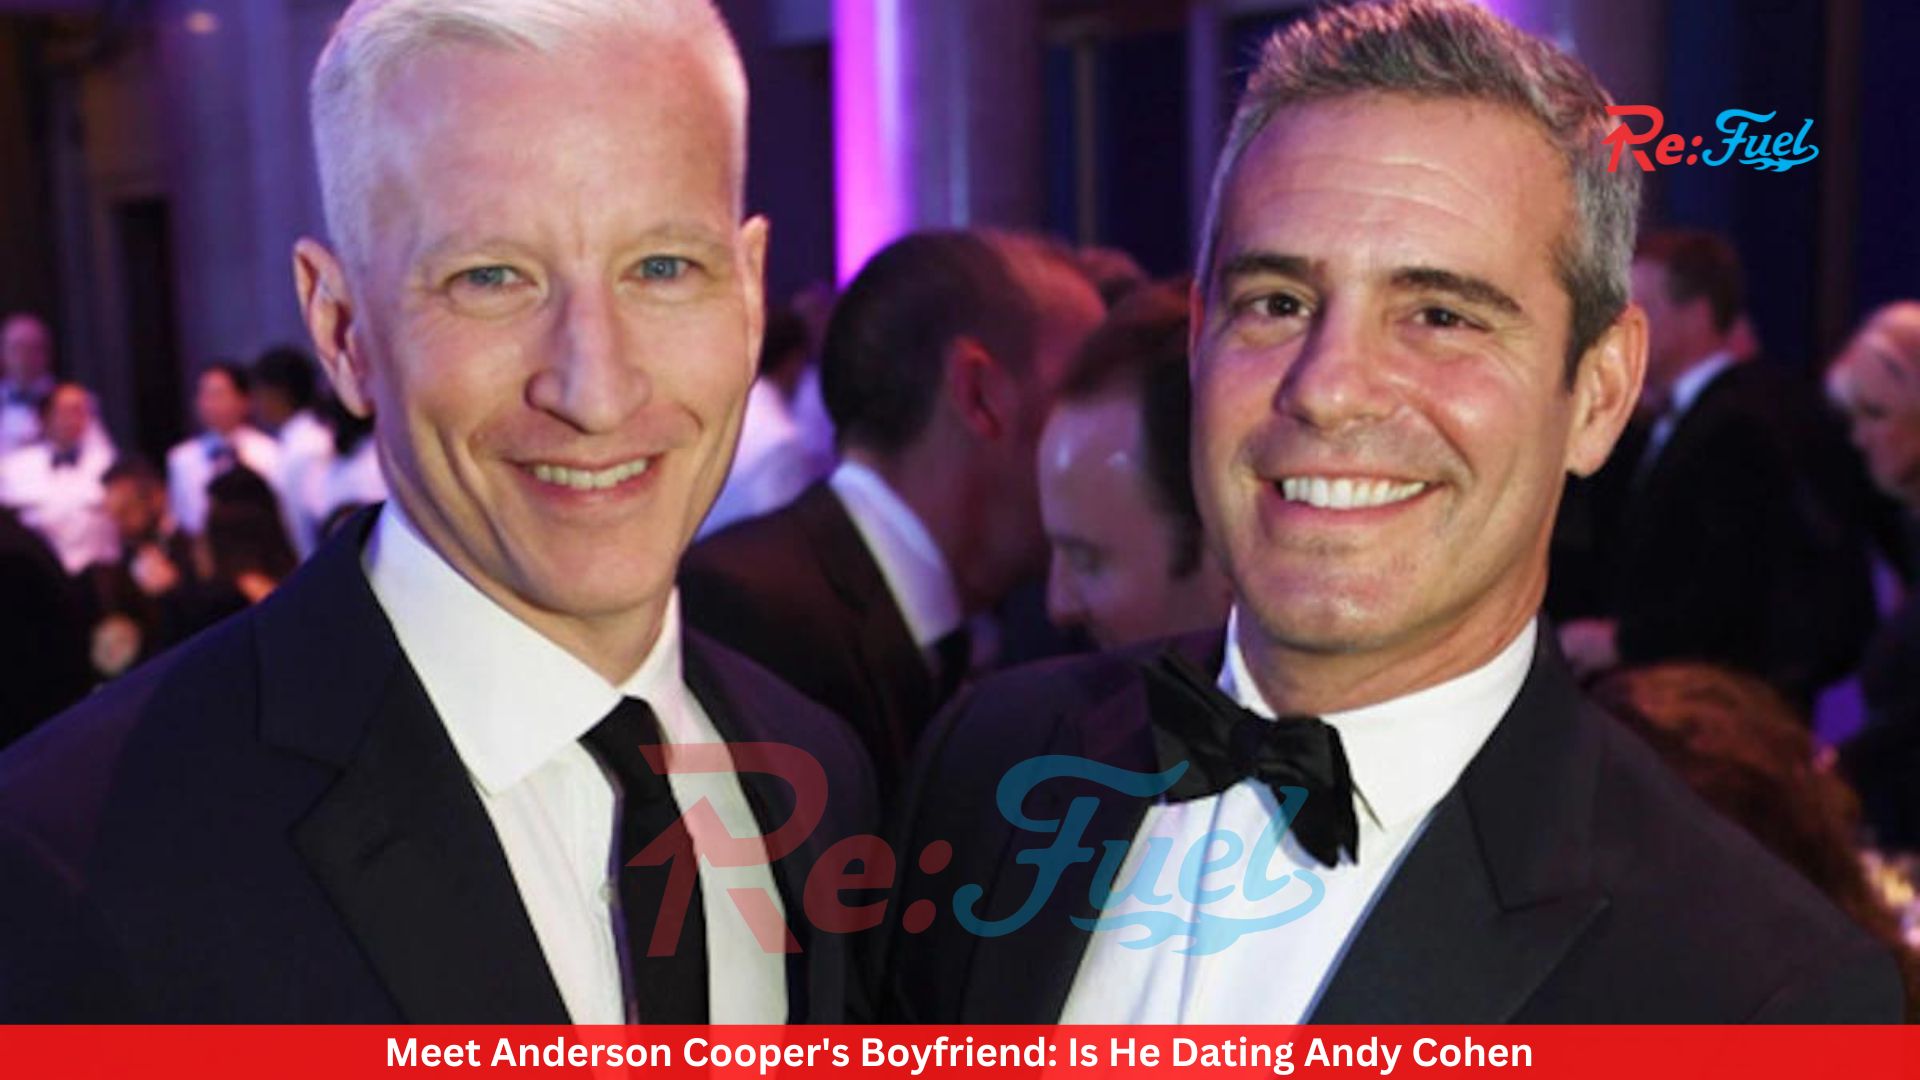 Meet Anderson Cooper's Boyfriend: Is He Dating Andy Cohen